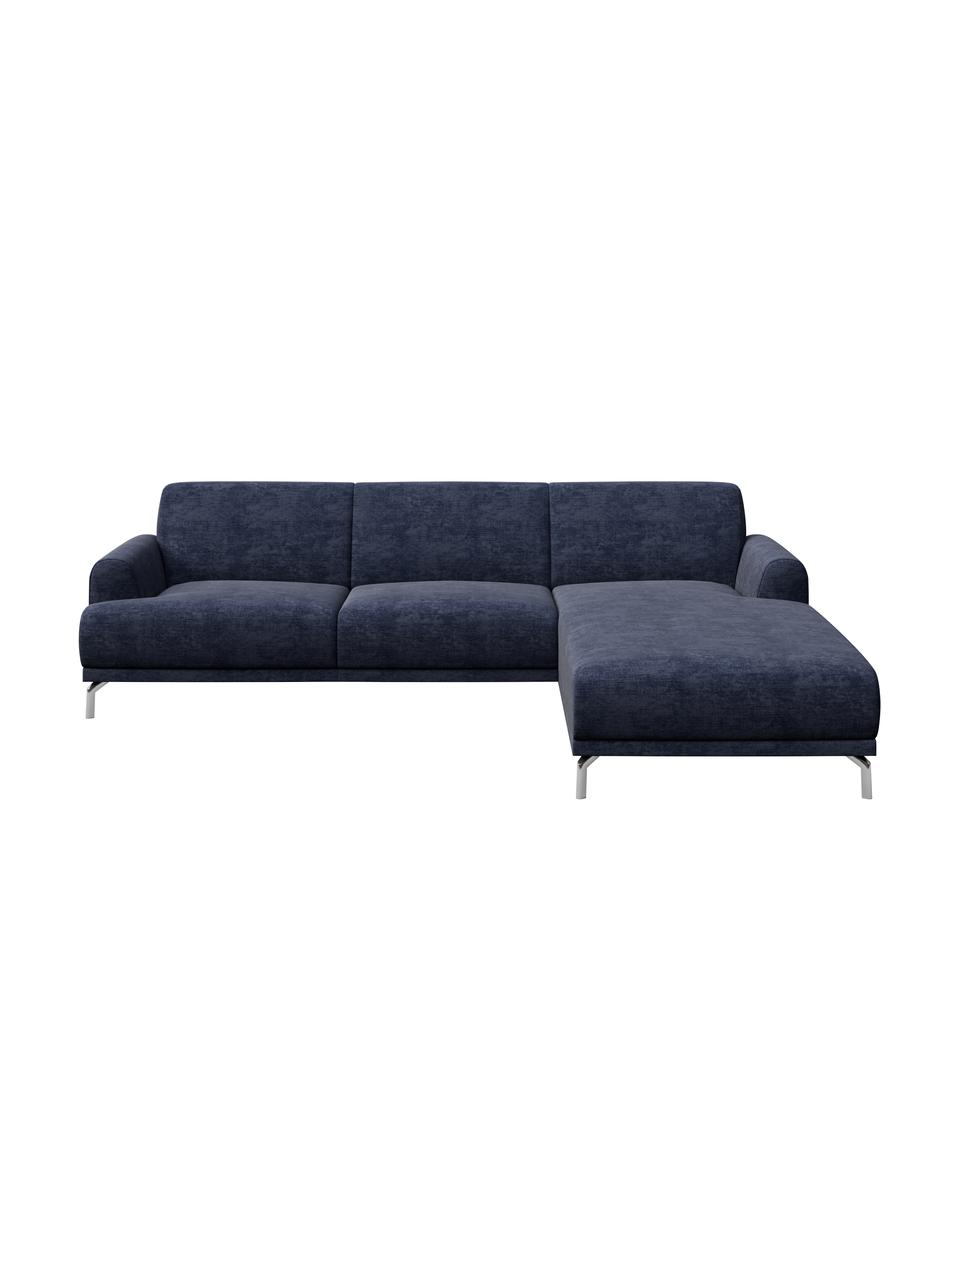 Sofa narożna z Zero Spot System Puzo, Tapicerka: 100% poliester z Zero Spo, Nogi: metal lakierowany, Niebieski, S 240 x G 165 cm